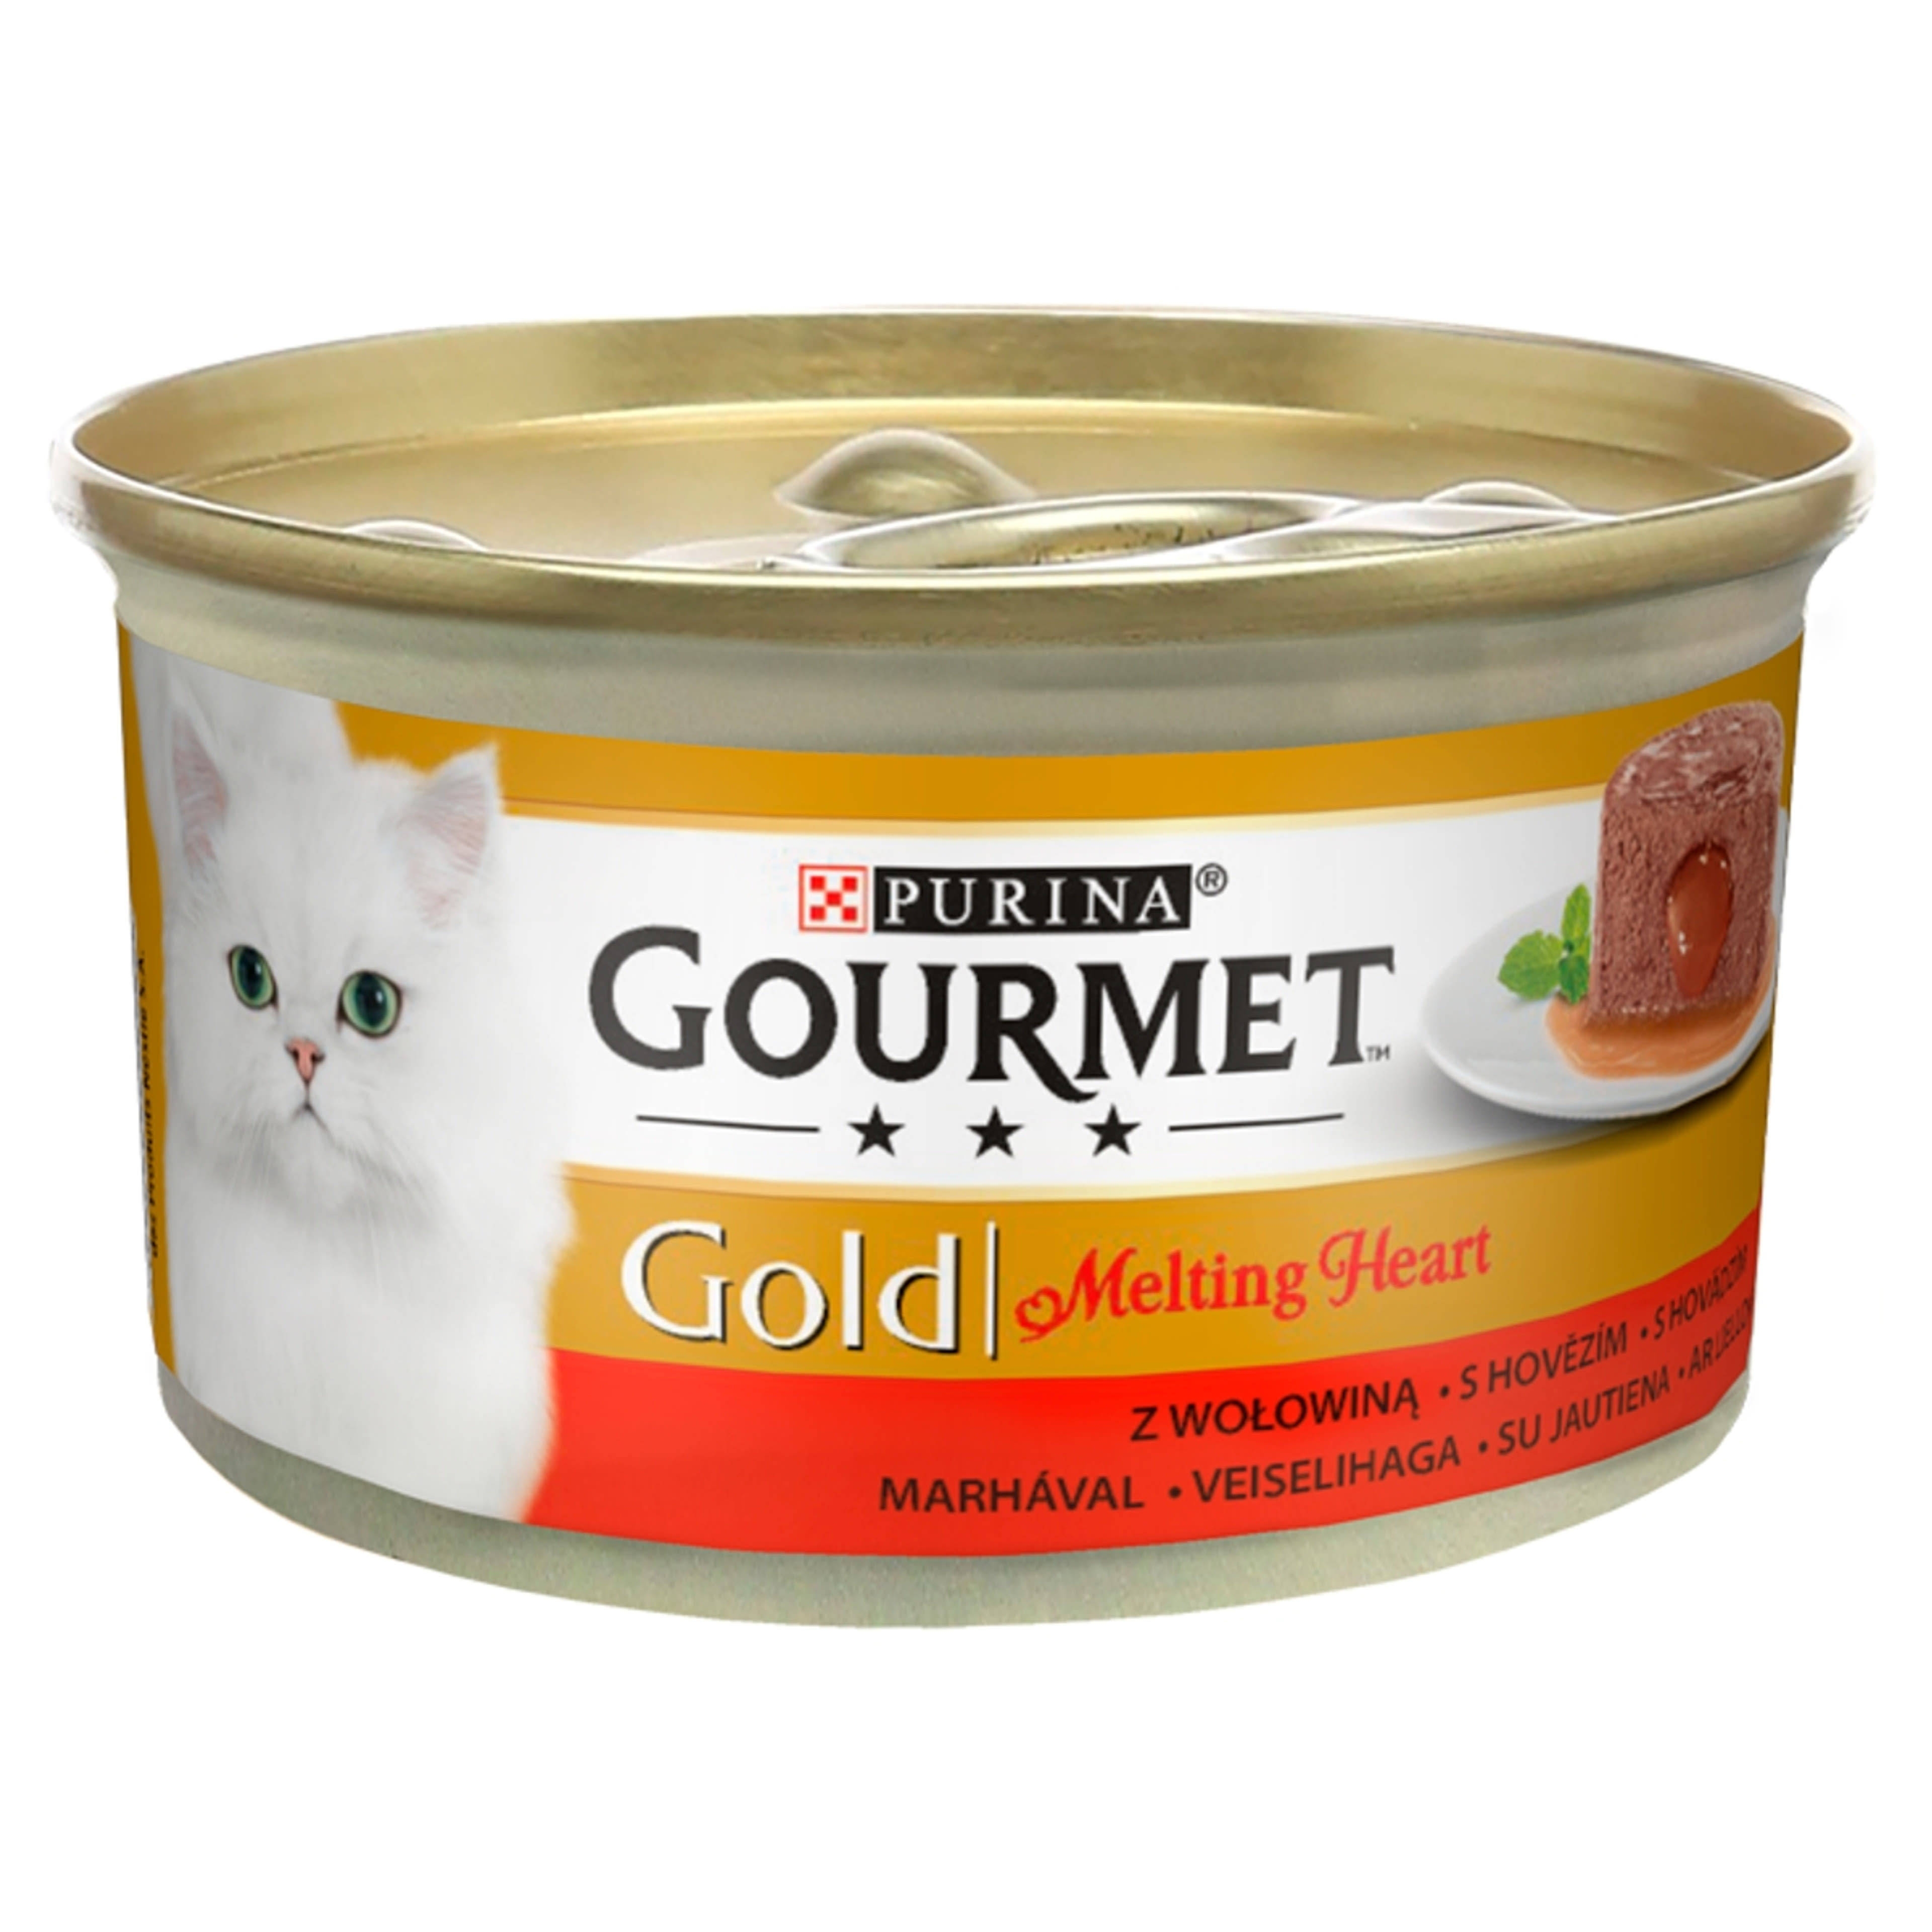 Gourmet gold melting macskáknak marhával - 85 g